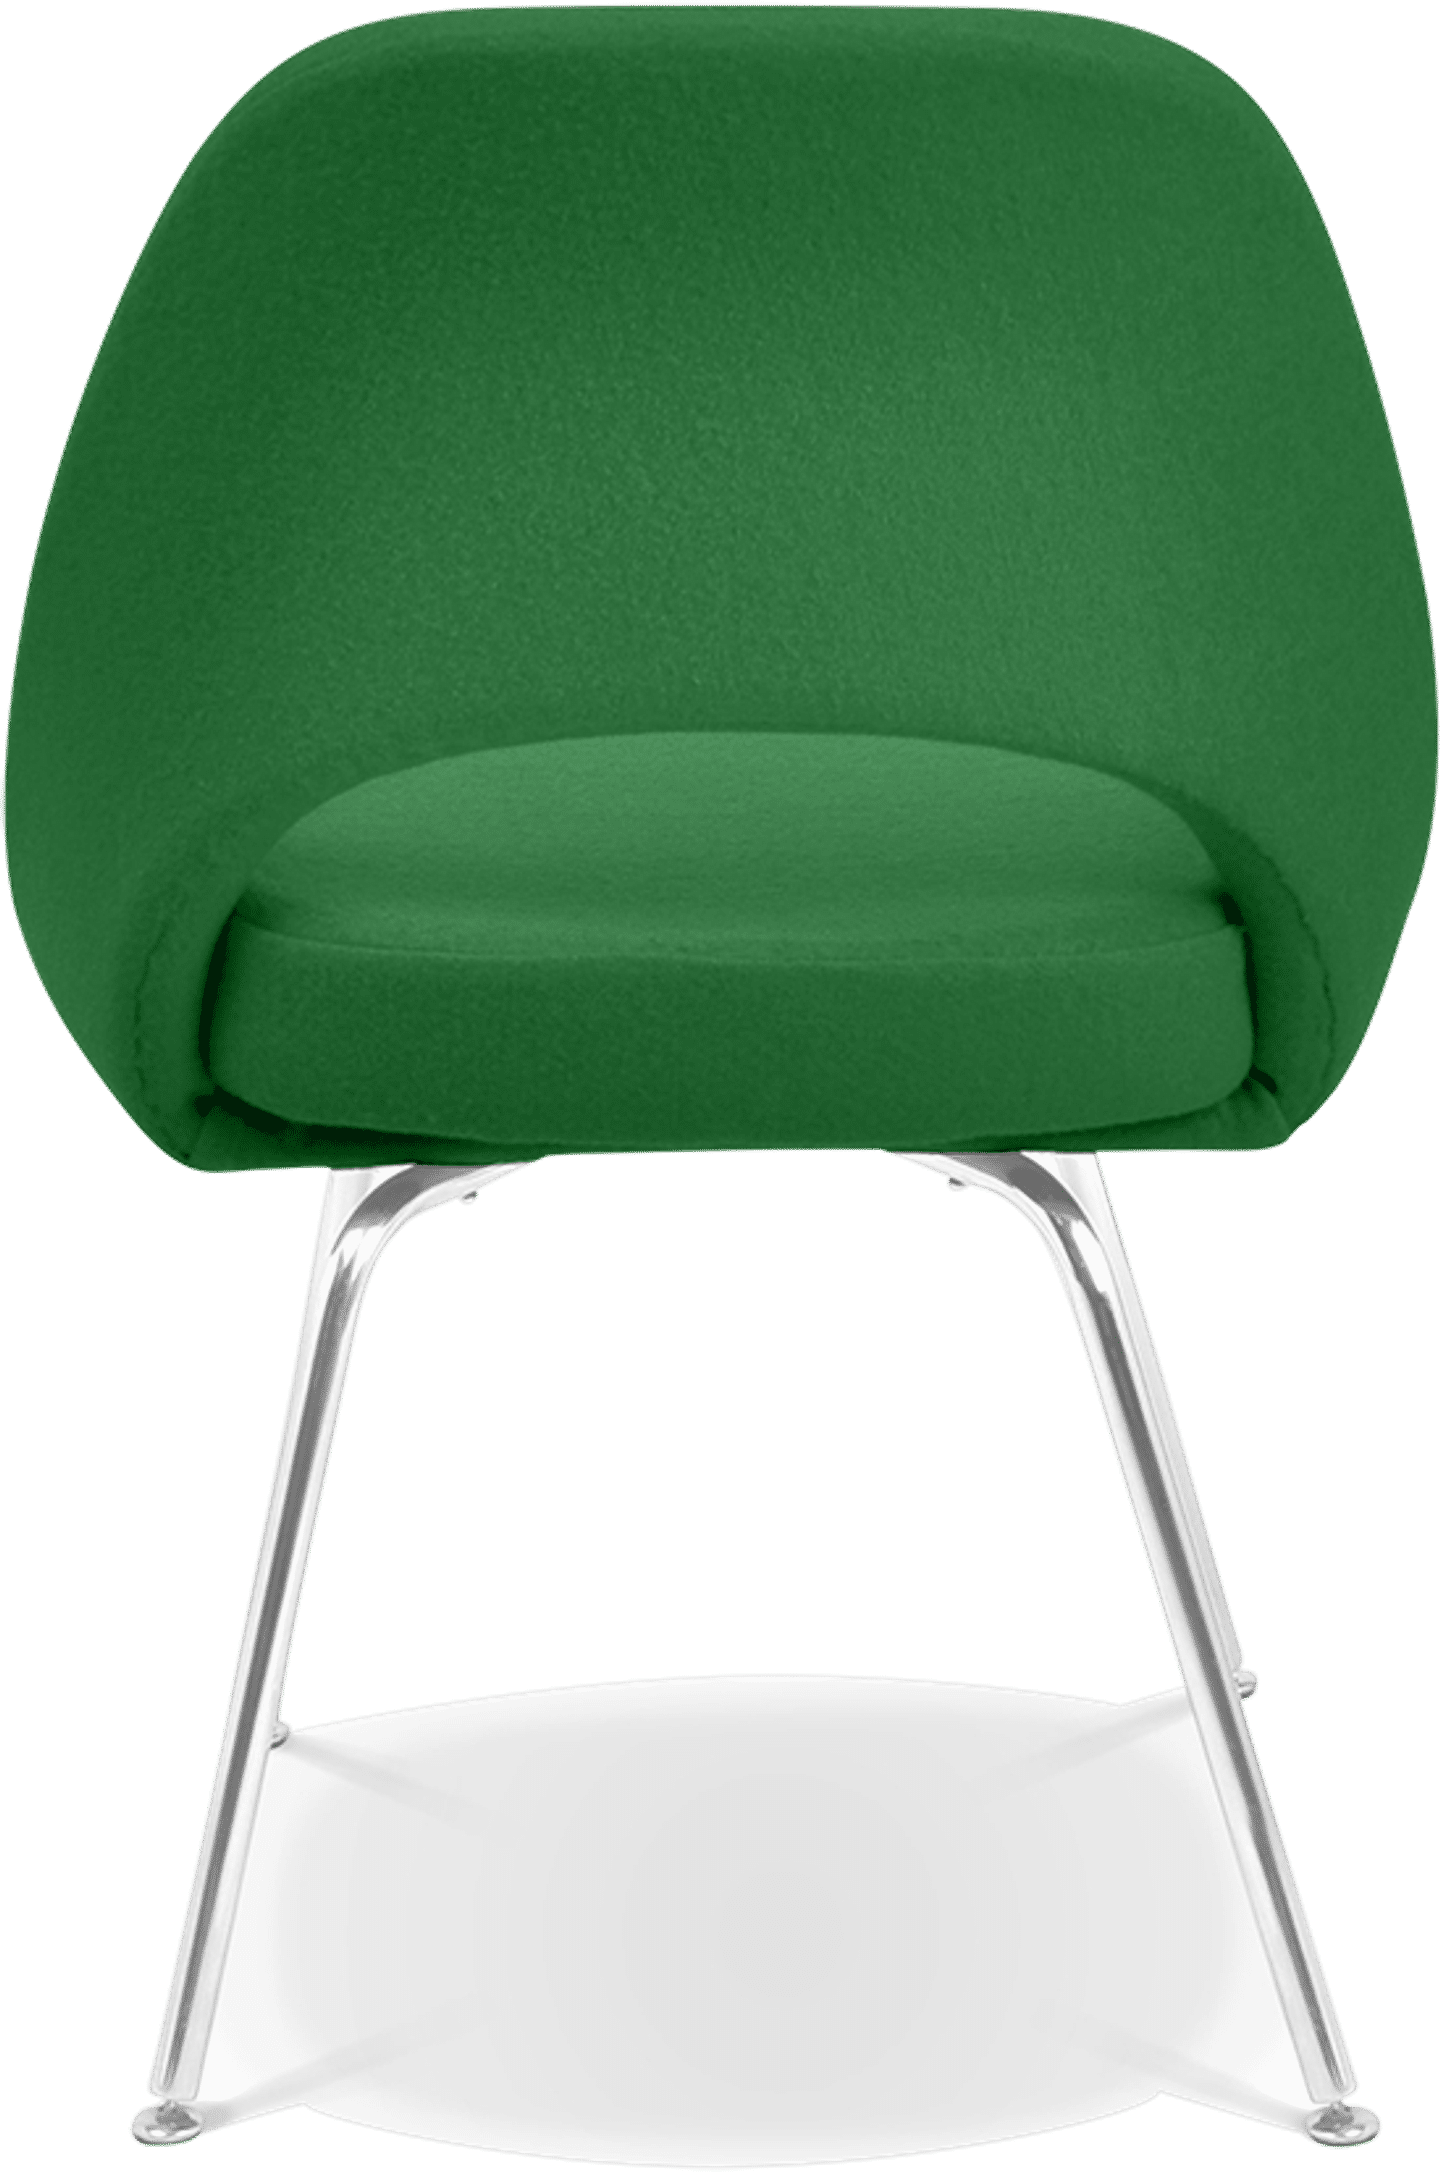 Silla ejecutiva Saarinen Green image.